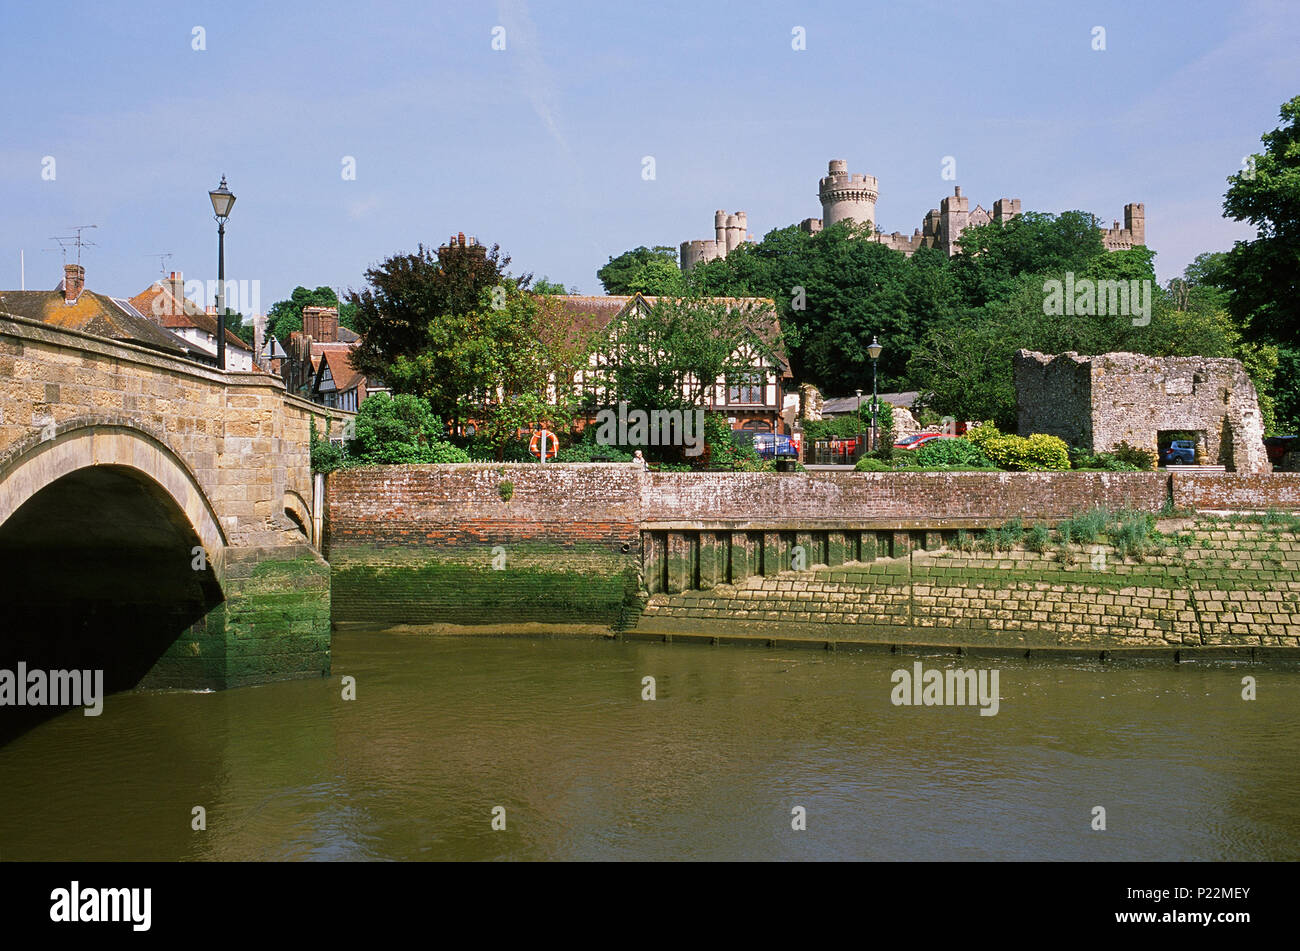 La ville historique d'Arundel, West Sussex, UK, à partir de la rivière Arun, avec pont et château d'Arundel Banque D'Images